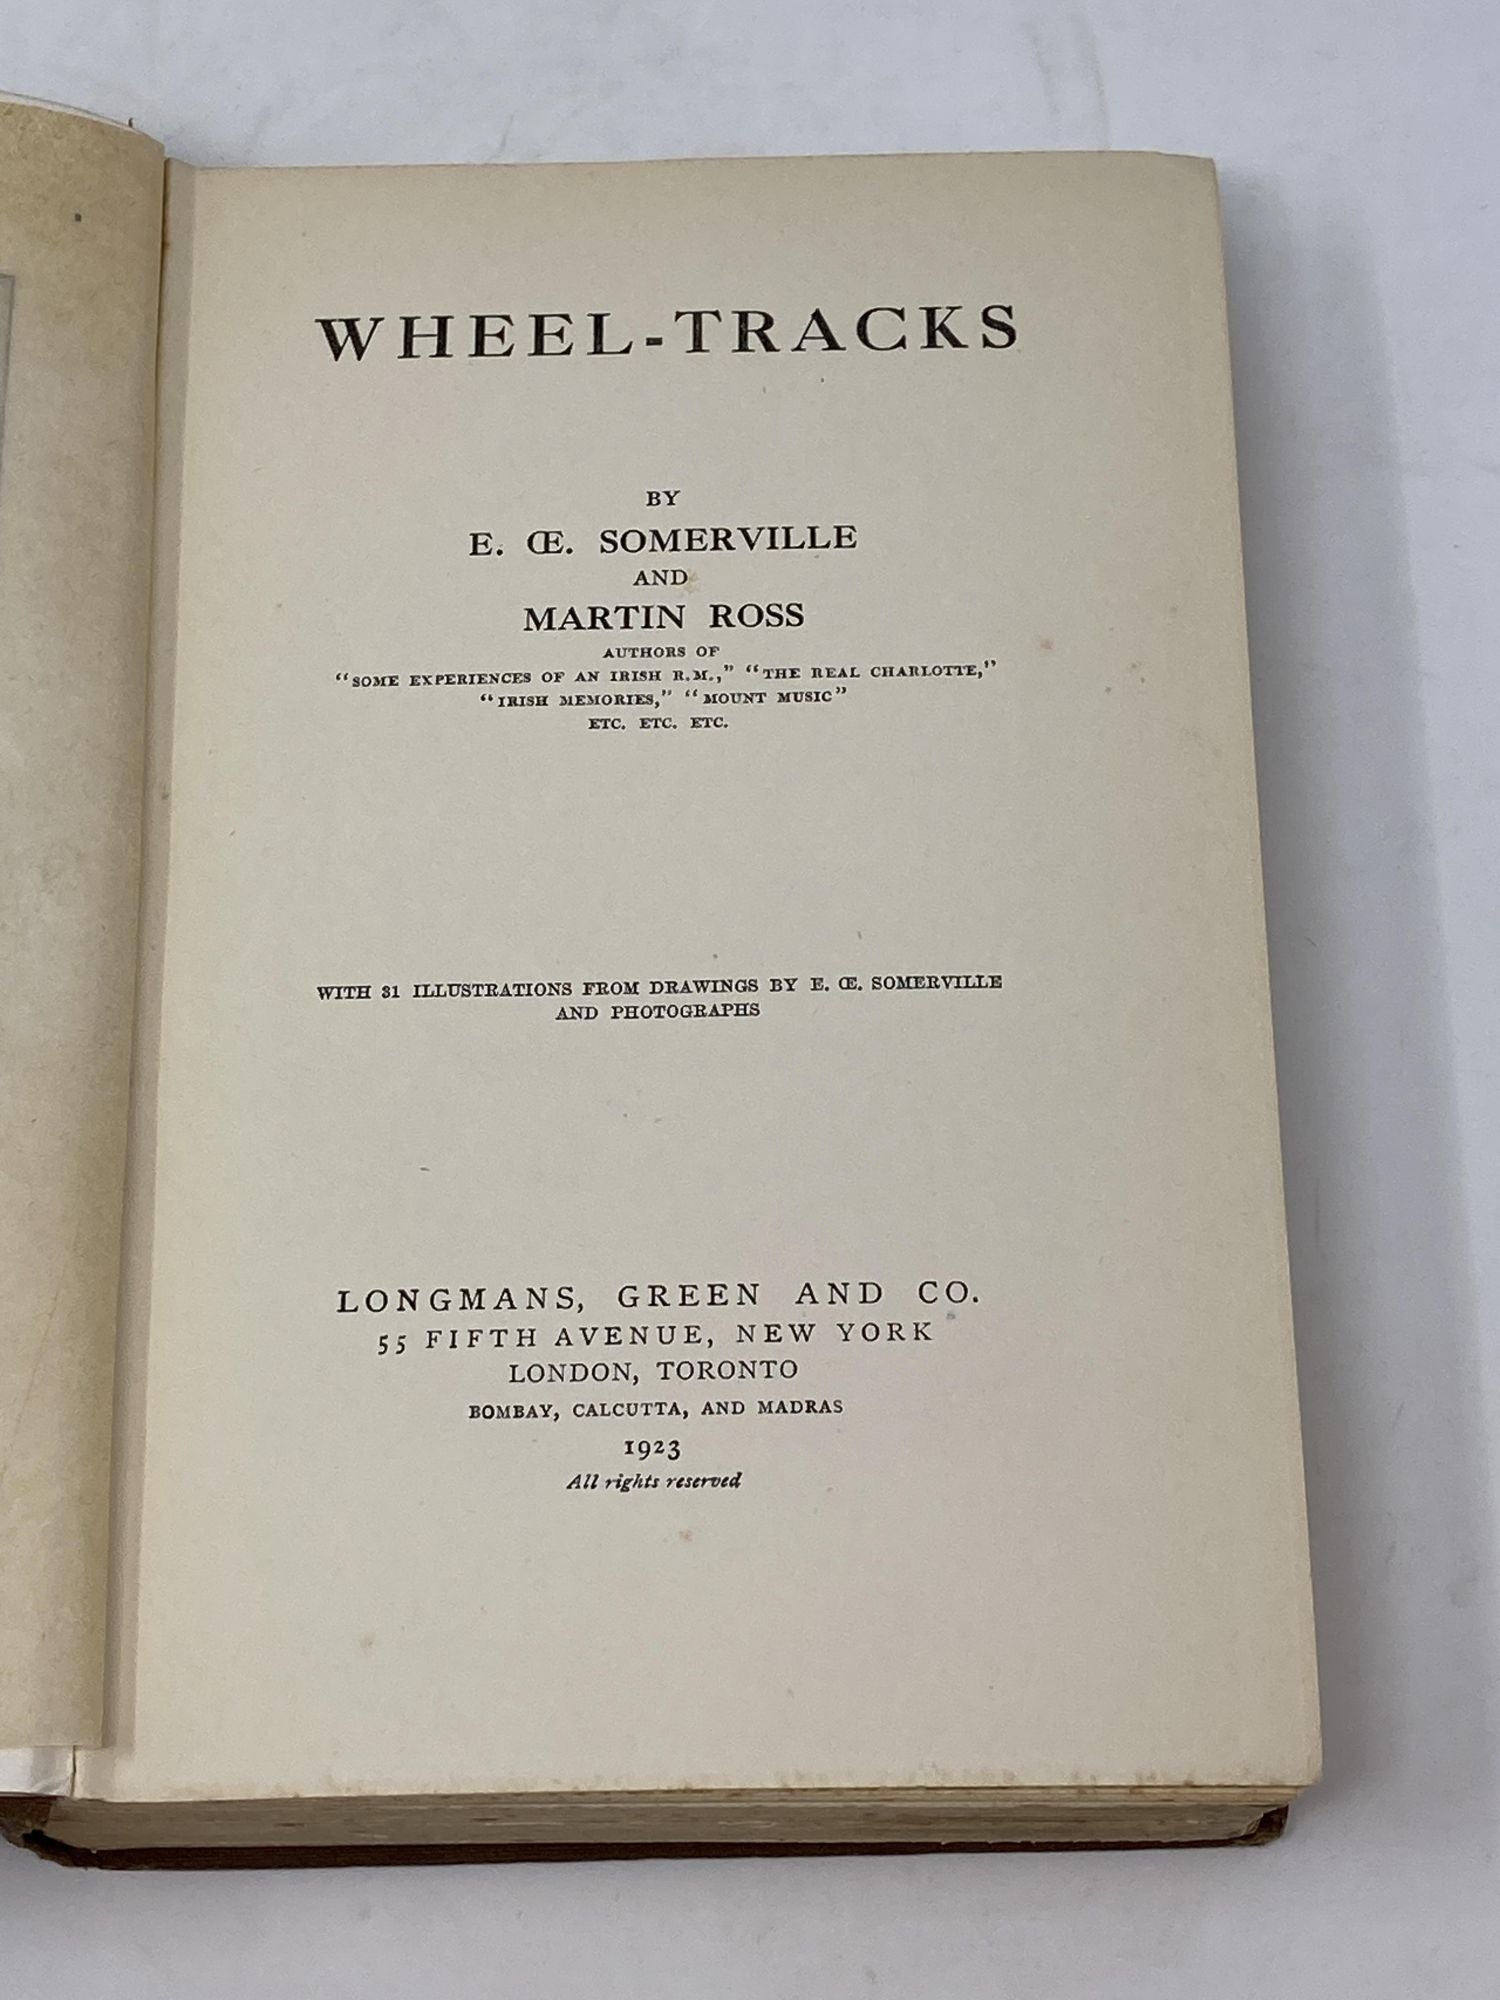 Somerville, E. OE. and Martin Ross - Wheel-Tracks